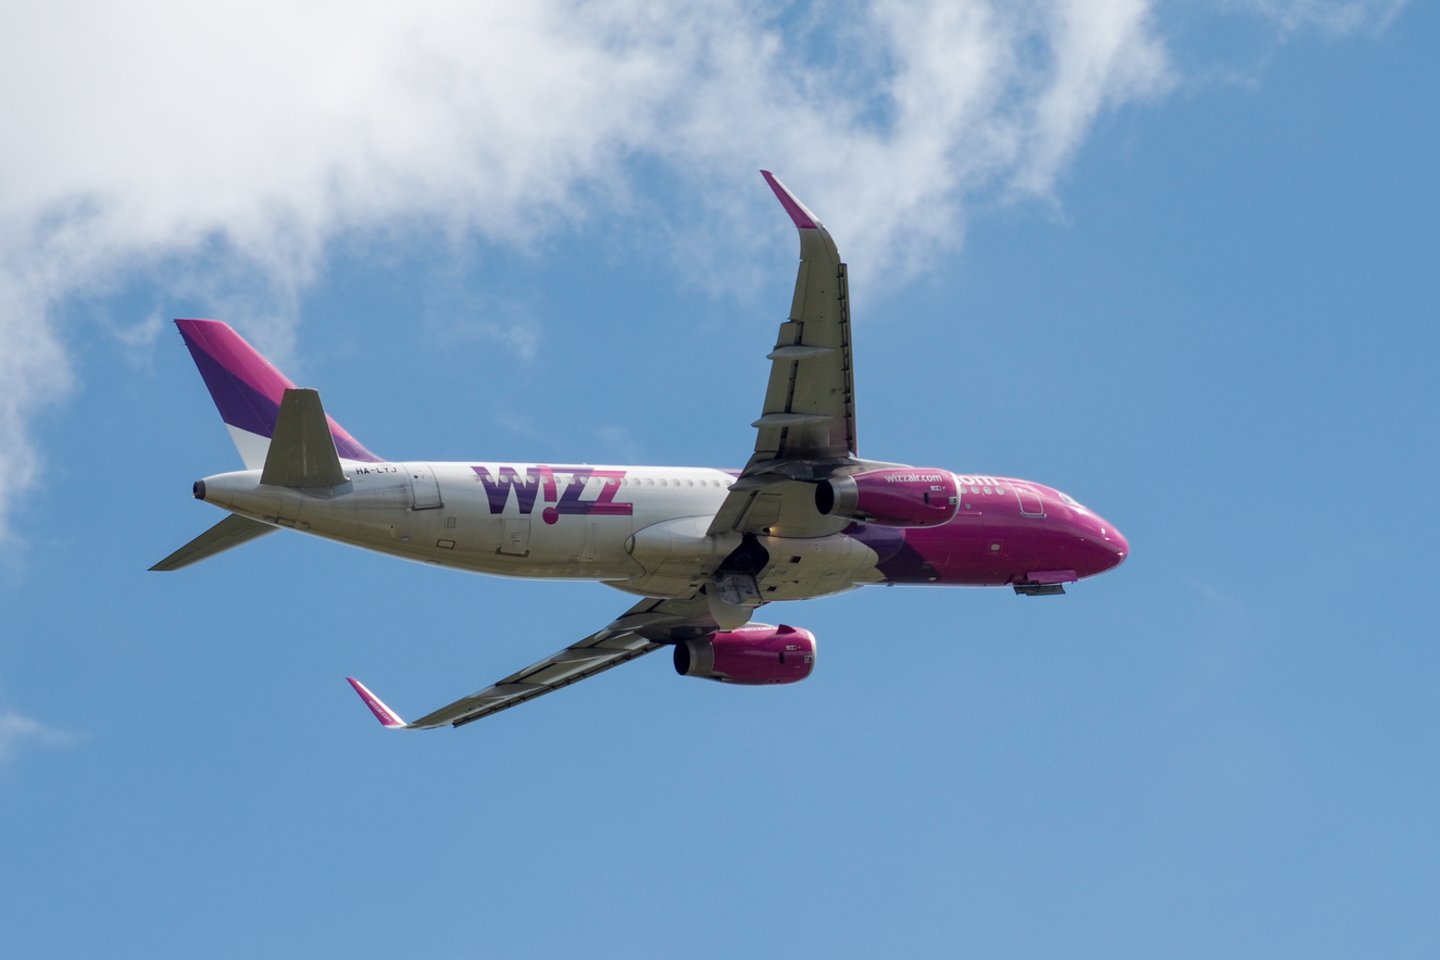 Pigių skrydžių aviakompanija „Wizz Air“ nebevykdys skrydžių kai kuriomis kryptimis.<br>V.Ščiavinsko nuotr.